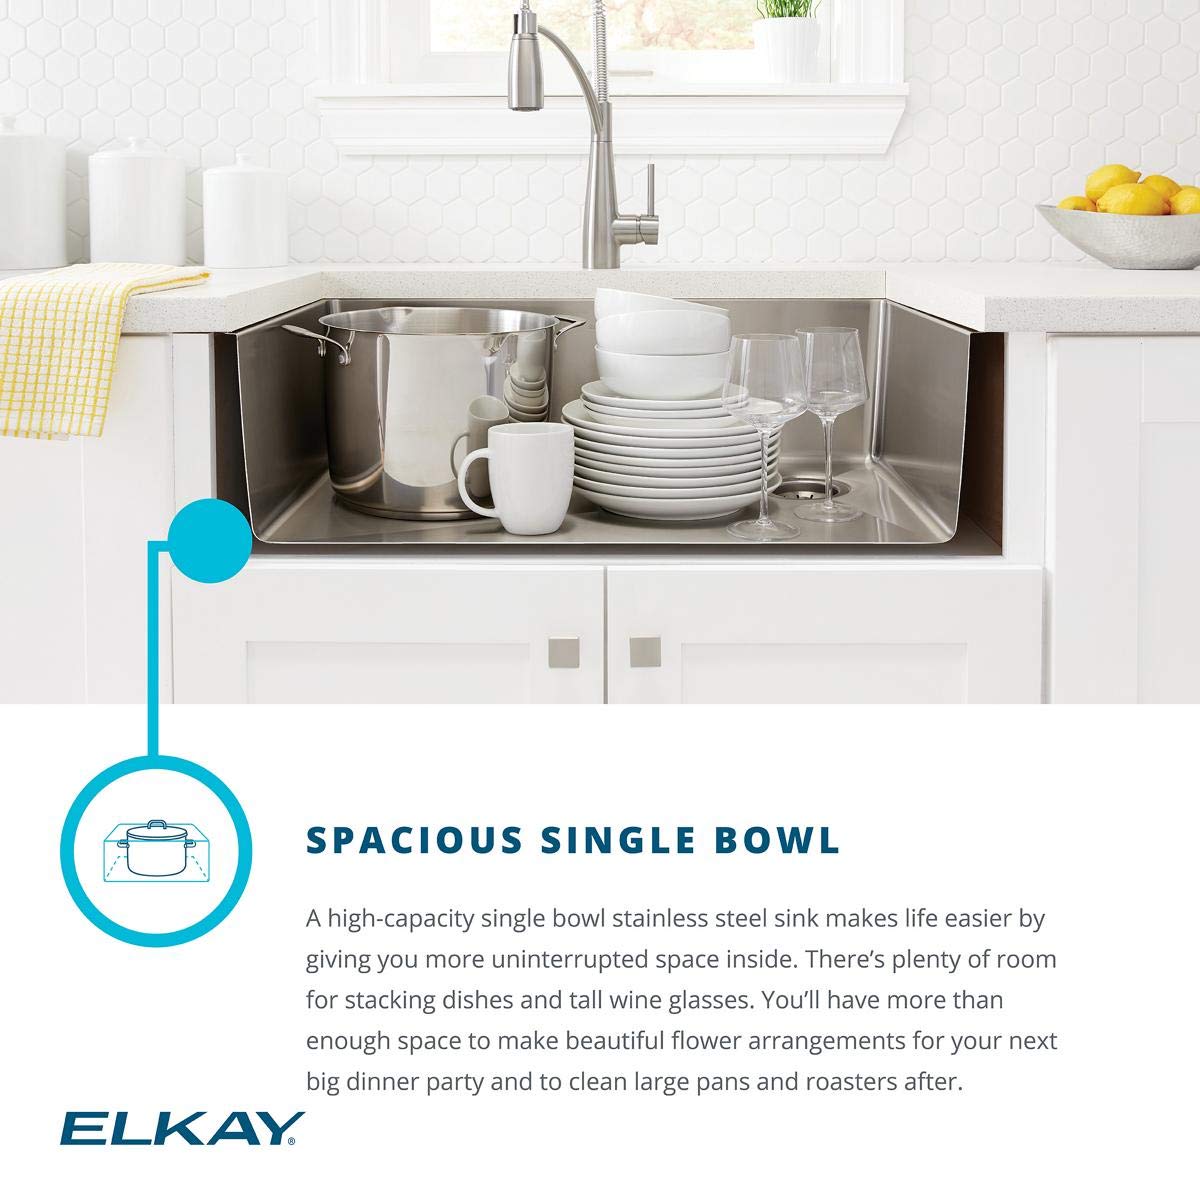 Bồn rửa chén Elkay ECTRUF30179RC với chất liệu thép không gỉ làm tăng tính thẩm mỹ của không gian bếp. Với các tính năng tuyệt vời, sản phẩm này không chỉ đáp ứng được nhu cầu sử dụng mà còn tạo nên sự khác biệt và sự sang trọng cho không gian bếp. Hãy cùng khám phá những sản phẩm thiết kế nội thất Elkay để trang trí không gian sống của bạn.